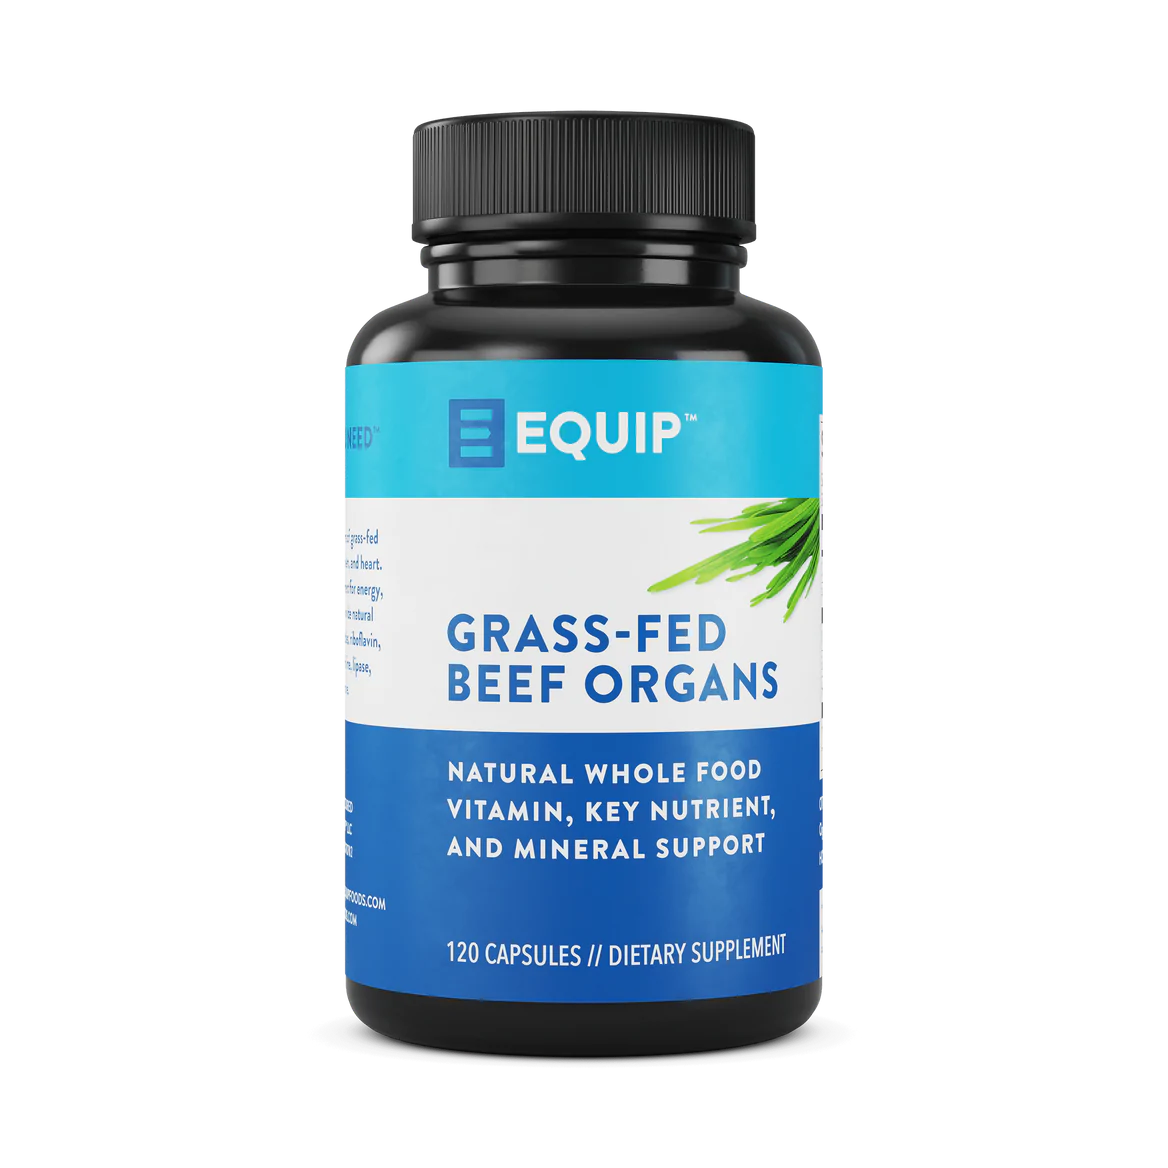 Equip: Grass-fed Beef Organs